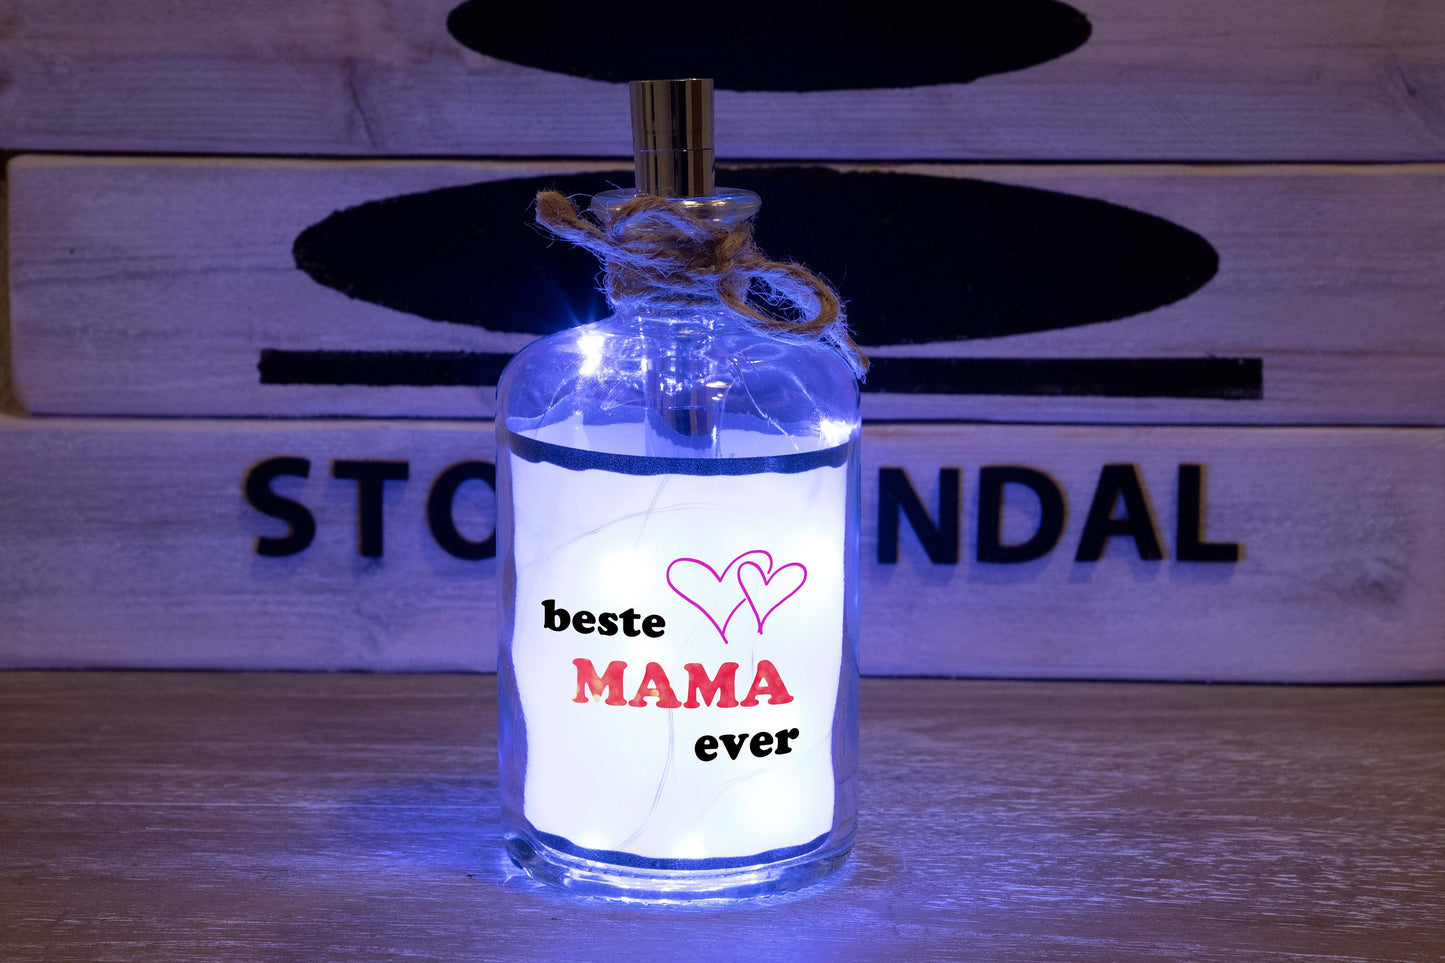 Stoamandal Flaschenpost - beste Mama ever - LED Flaschenpost beleuchtet